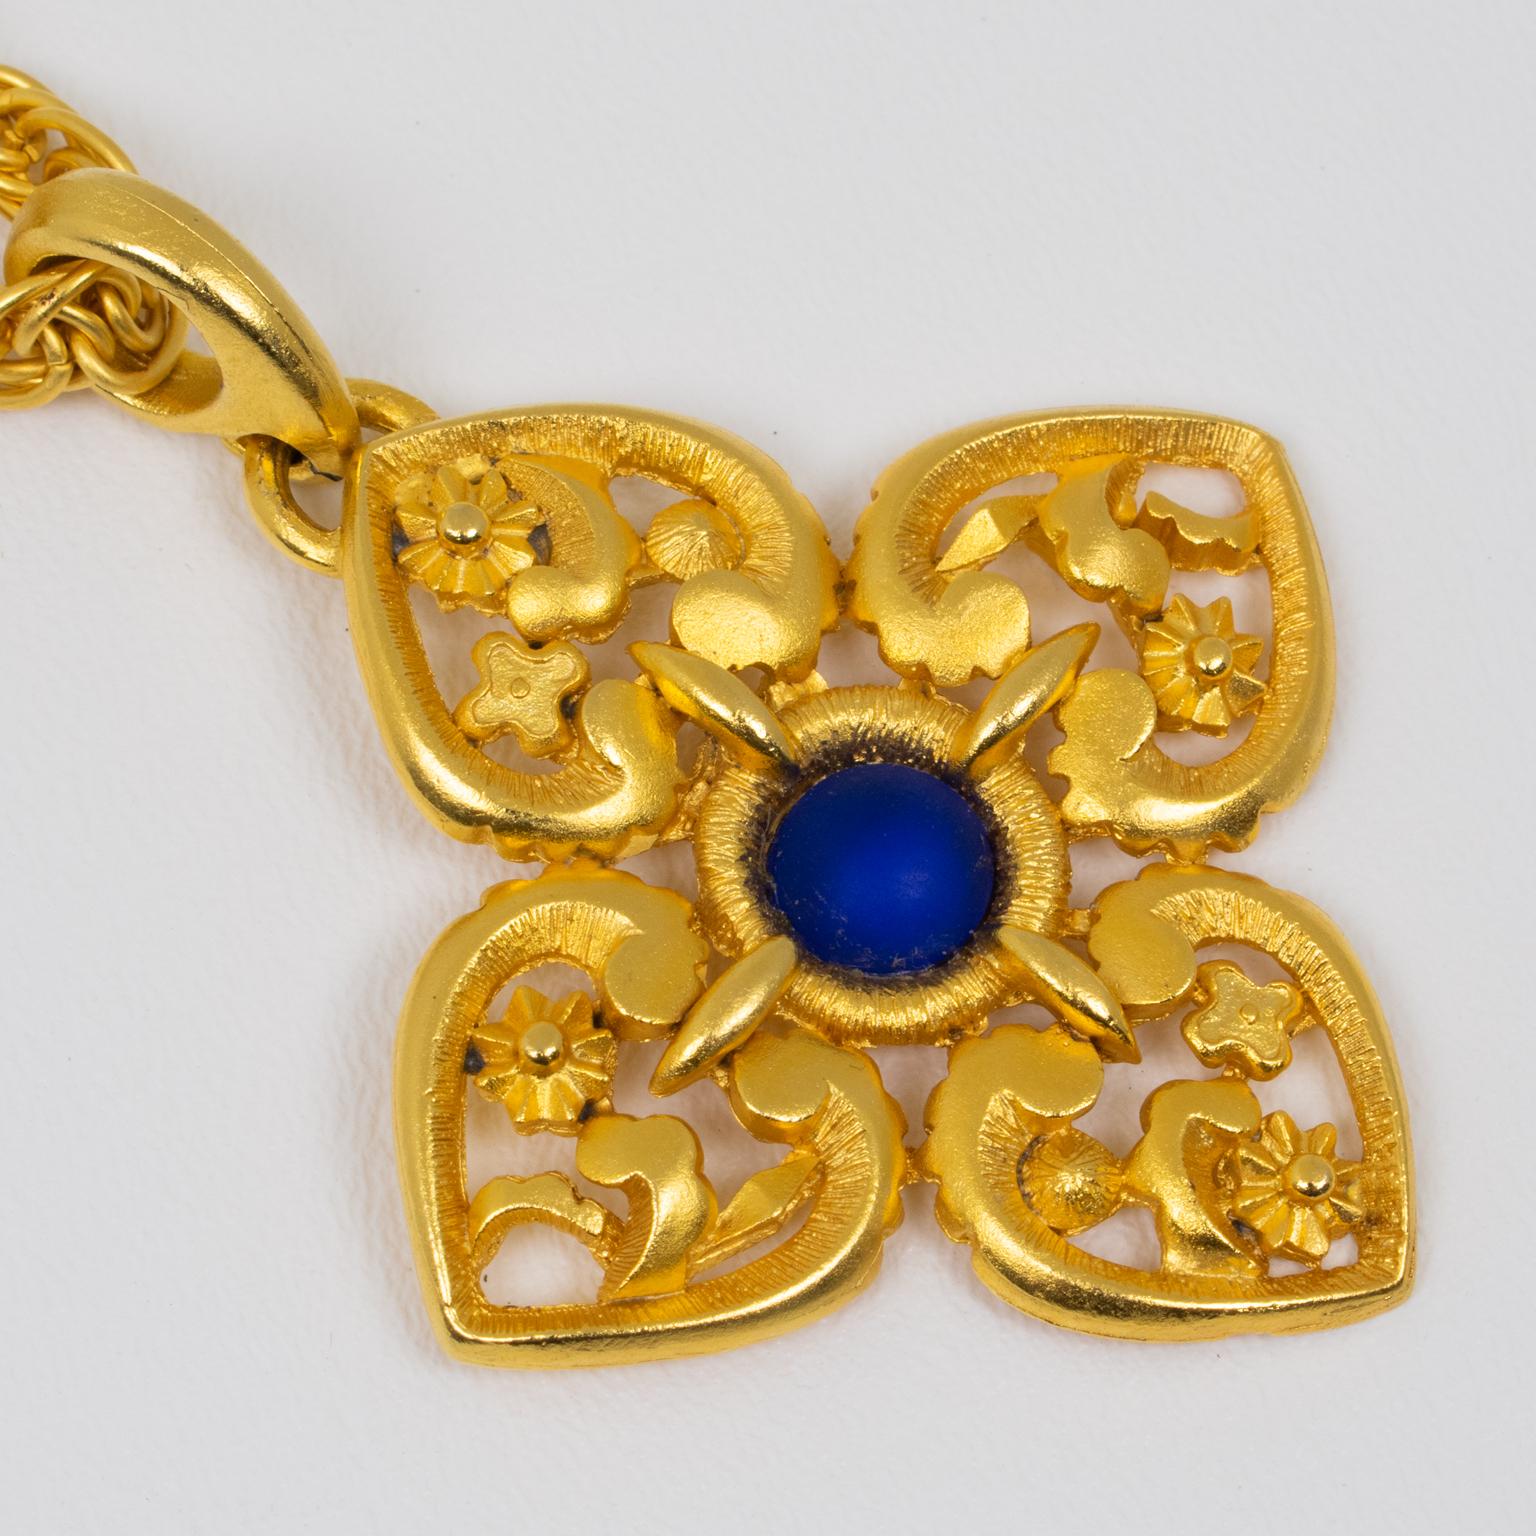 Lanvin Paris Gilt Metal Pendant Necklace with Blue Poured Glass Cabochon For Sale 2